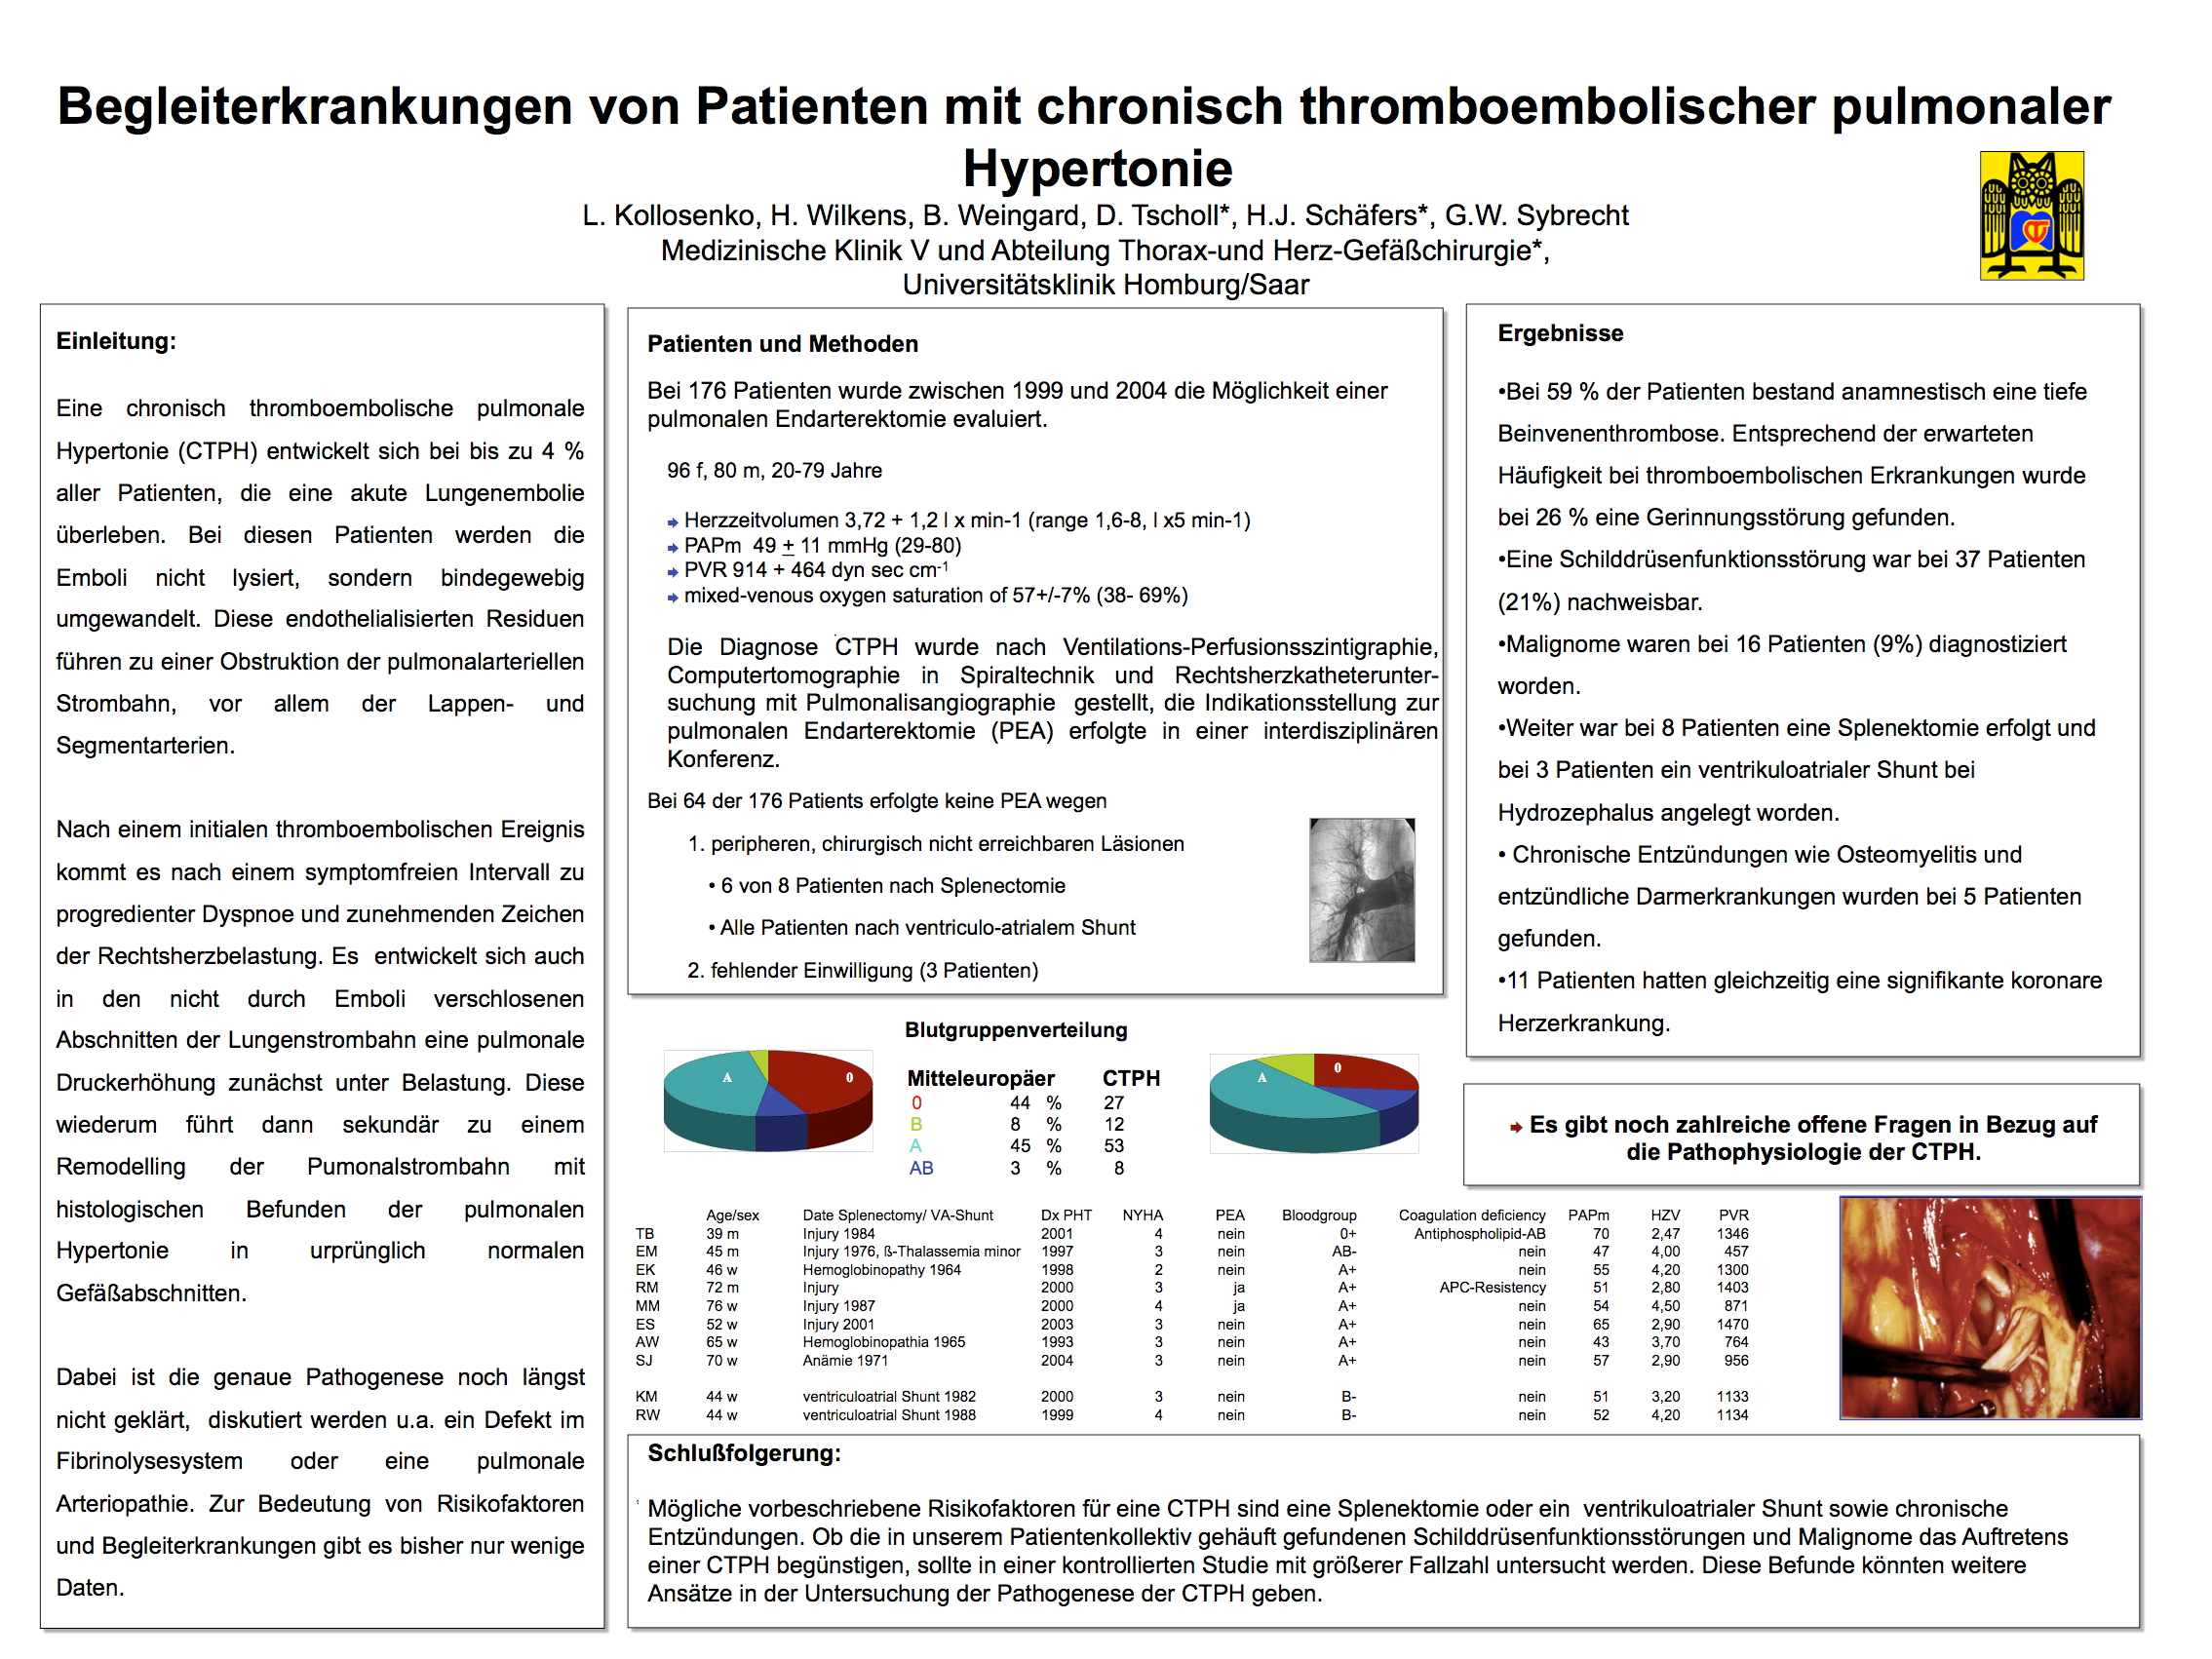 63 9. Publikationen L. Kolossenko, H. Wilkens, B. Weingard, D. Tscholl, H.-J. Schäfers, G.W. Sybrecht. Begleiterkrankungen von Patienten mit chronisch thromboembolischer pulmonaler Hypertonie.